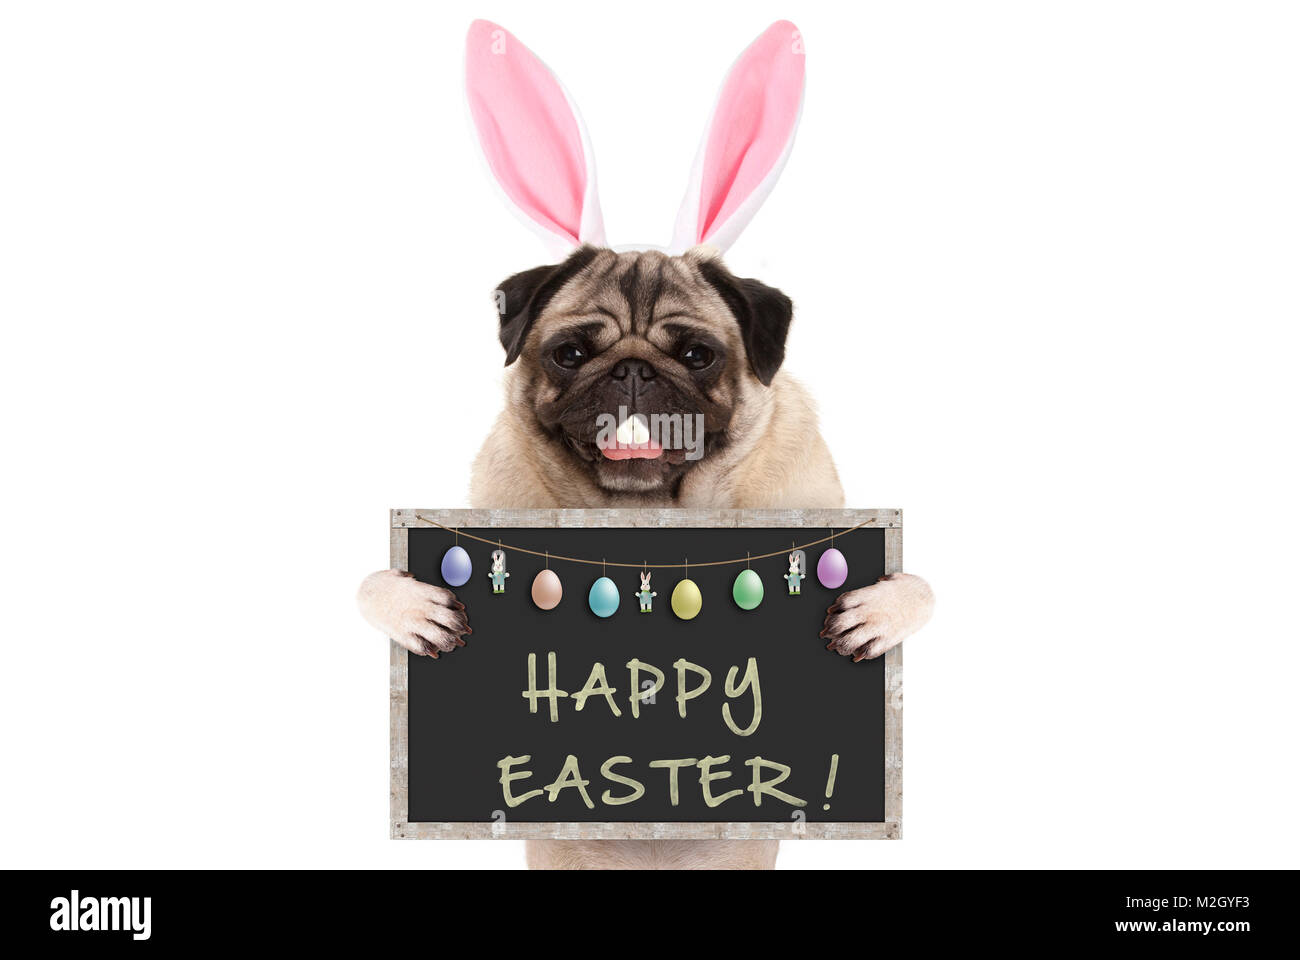 Osterhase mops Welpe Hund mit Ohren, Eier und Tafel mit Text frohe Ostern, auf weißem Hintergrund Stockfoto